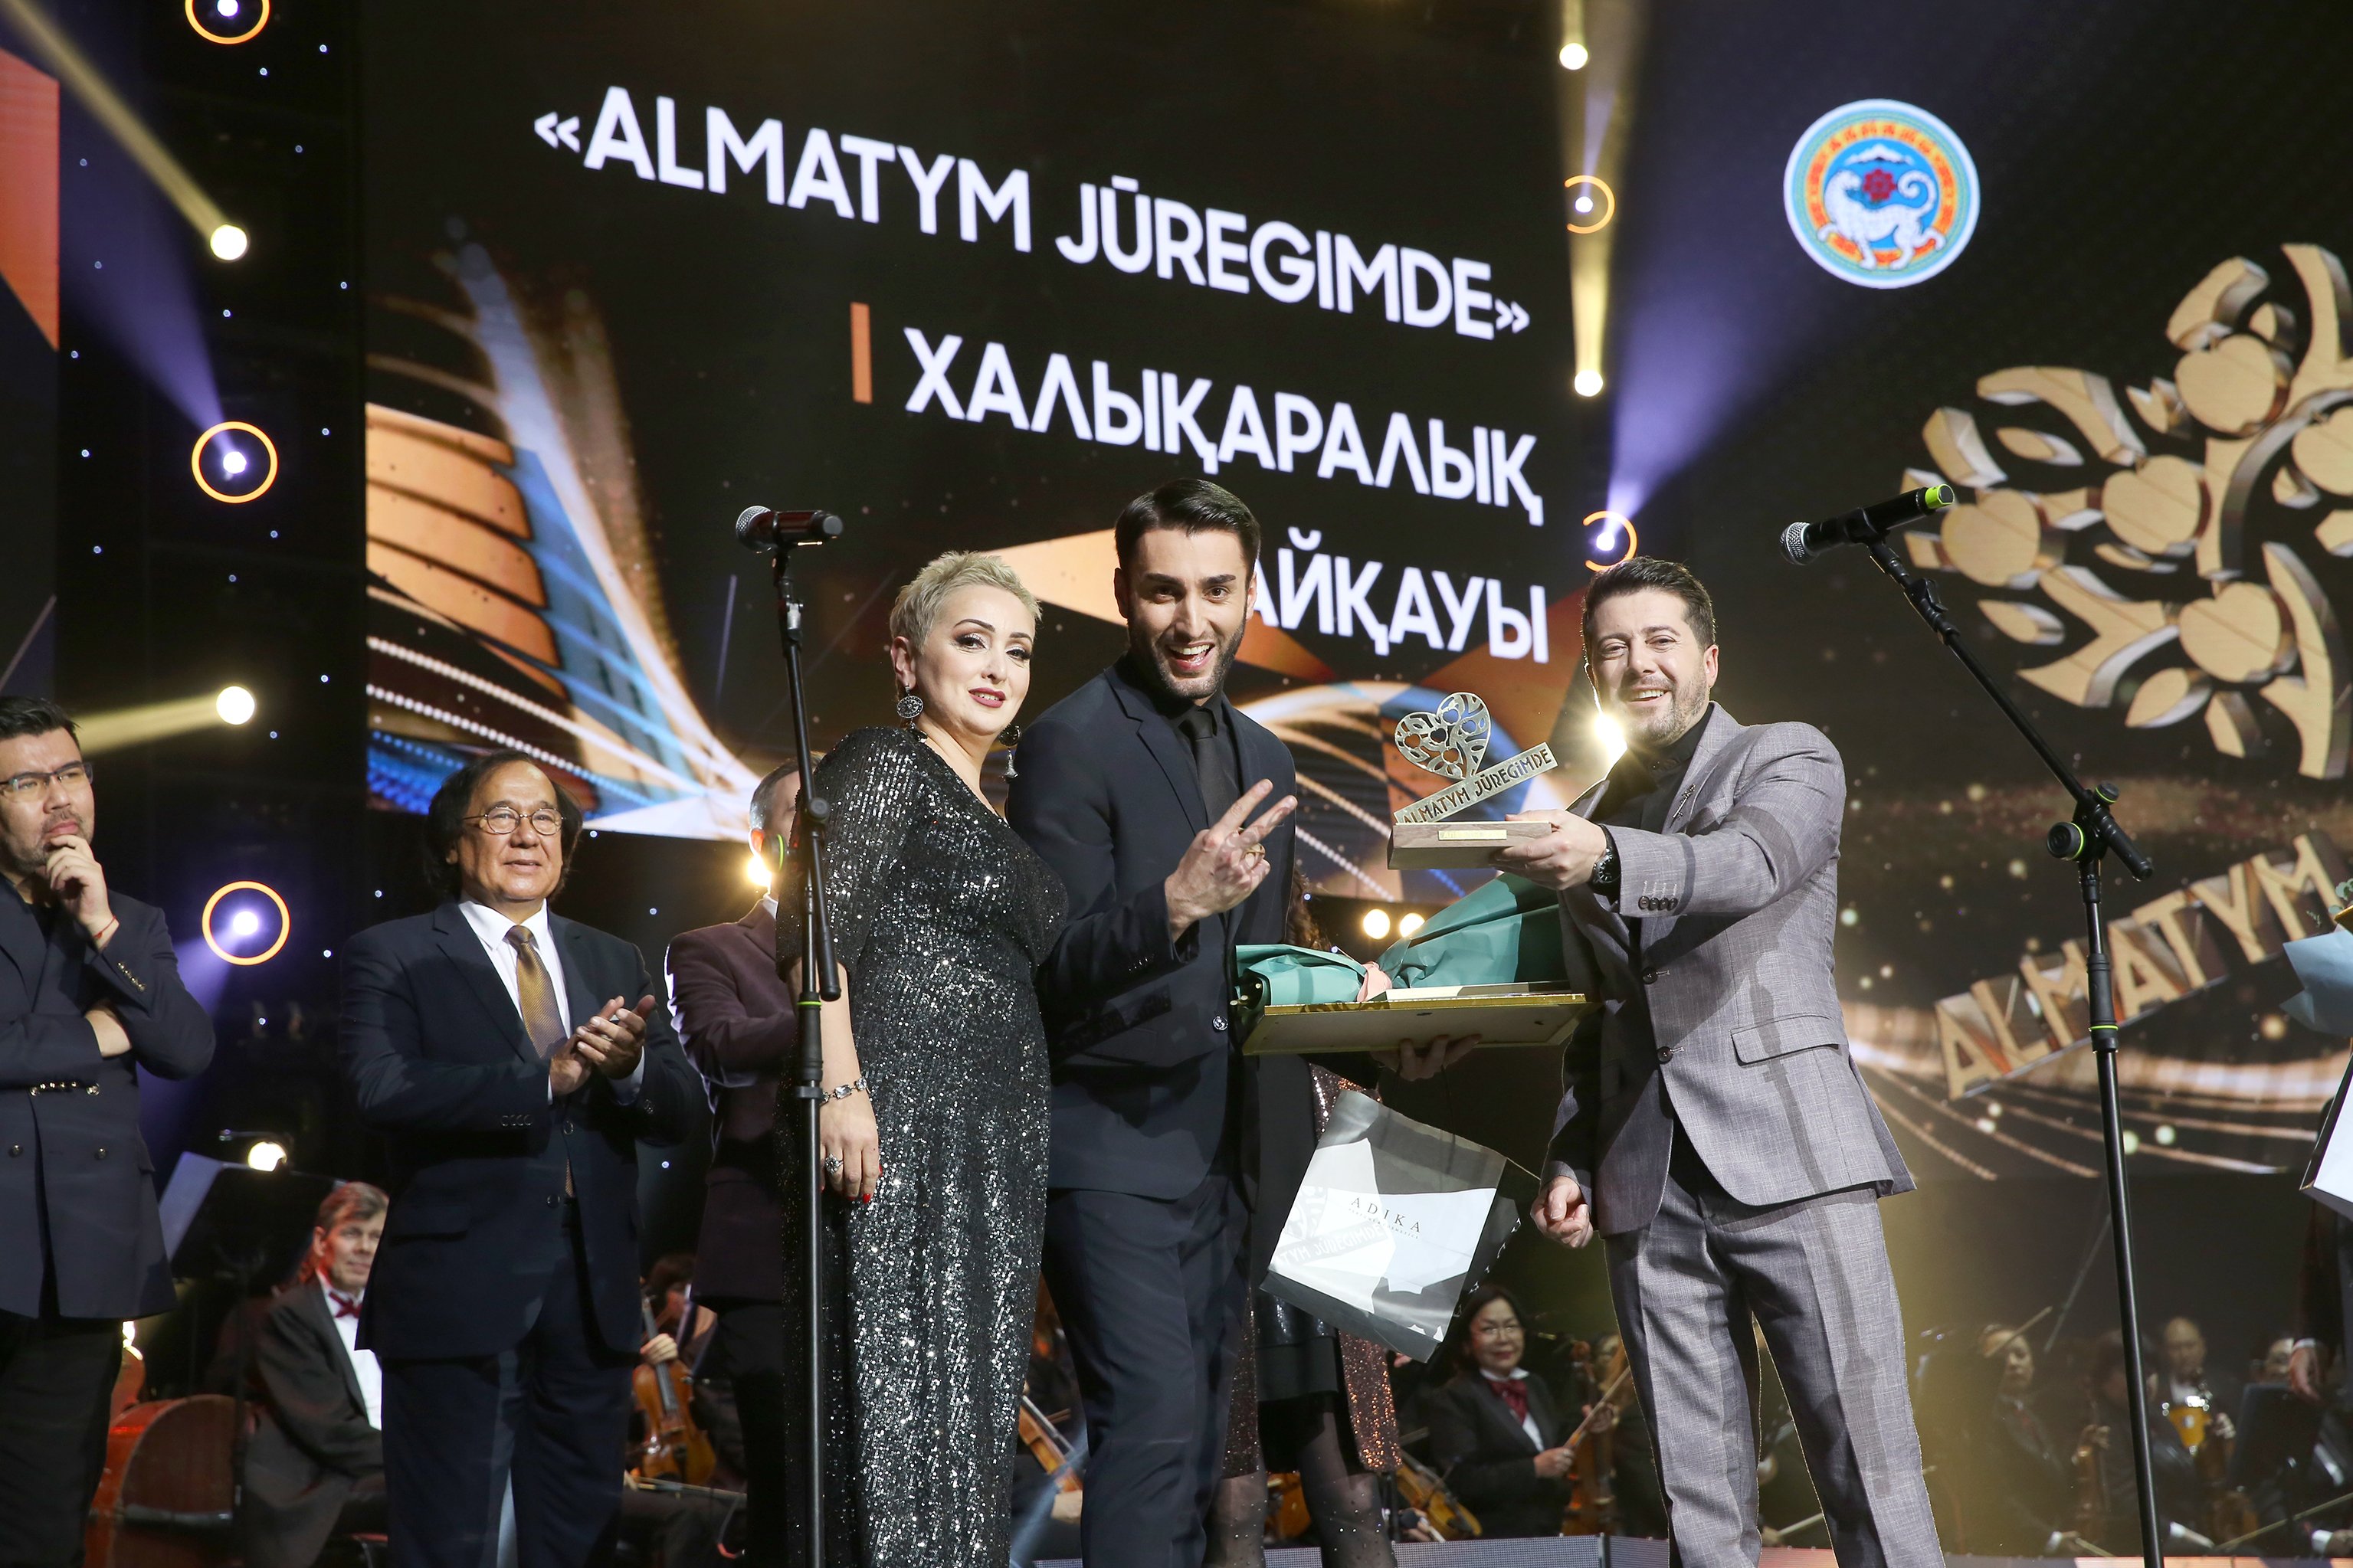 В Алматы состоялся международный конкурс исполнителей «Алматым жүрегімде-2022»